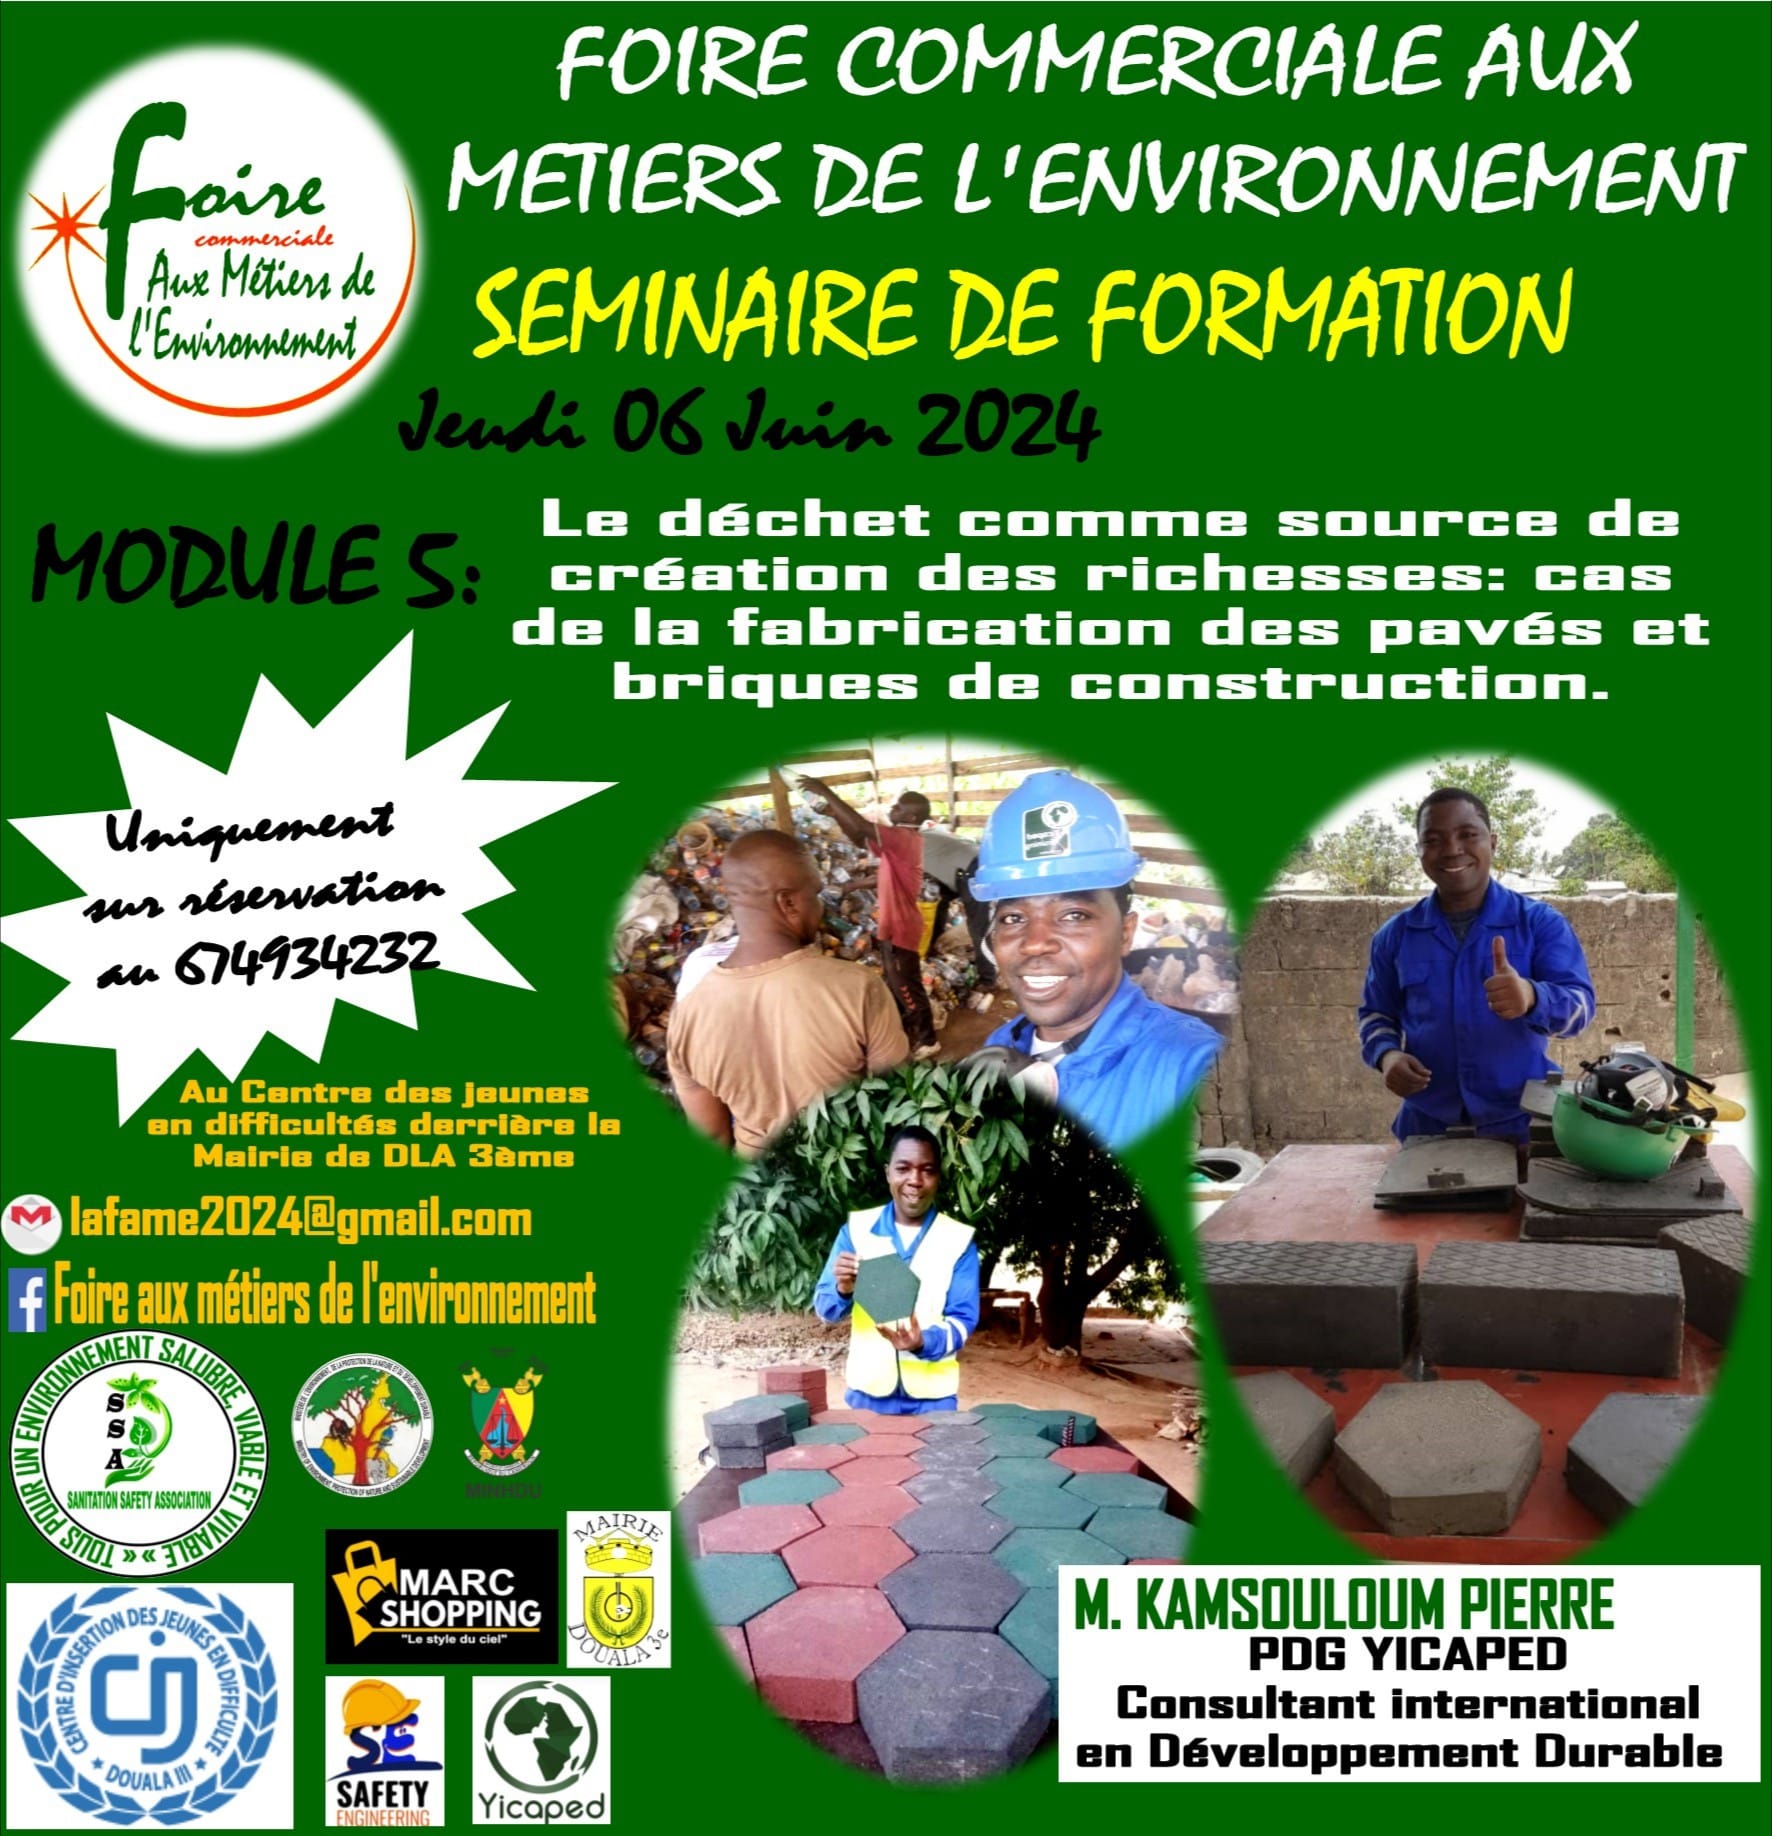 Douala: Foire Commerciale aux Metiers de l'Environnement